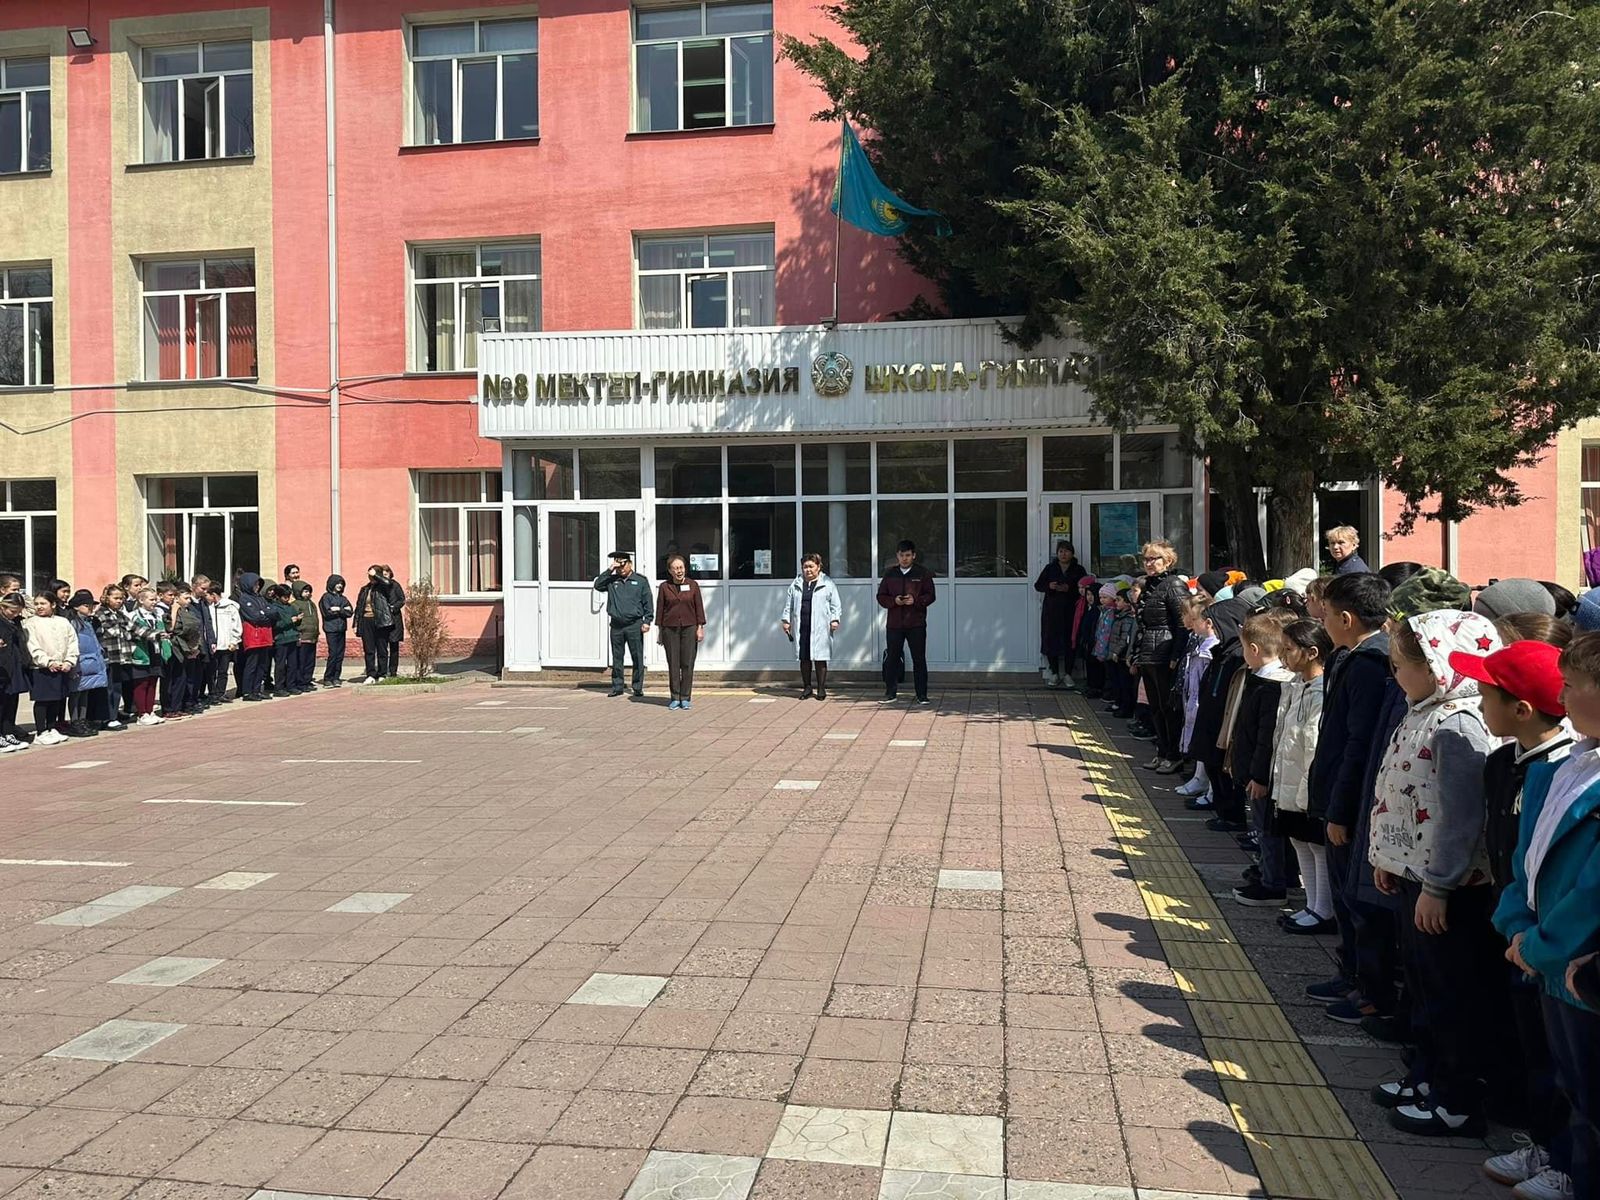 20 сәуір күні сағат 11.00-де Алматыда жалпықалалық сейсмикалық оқу-жаттығу өтті. Оқу-жаттығуға №8 мектеп-гимназиясы белсене қатысты.